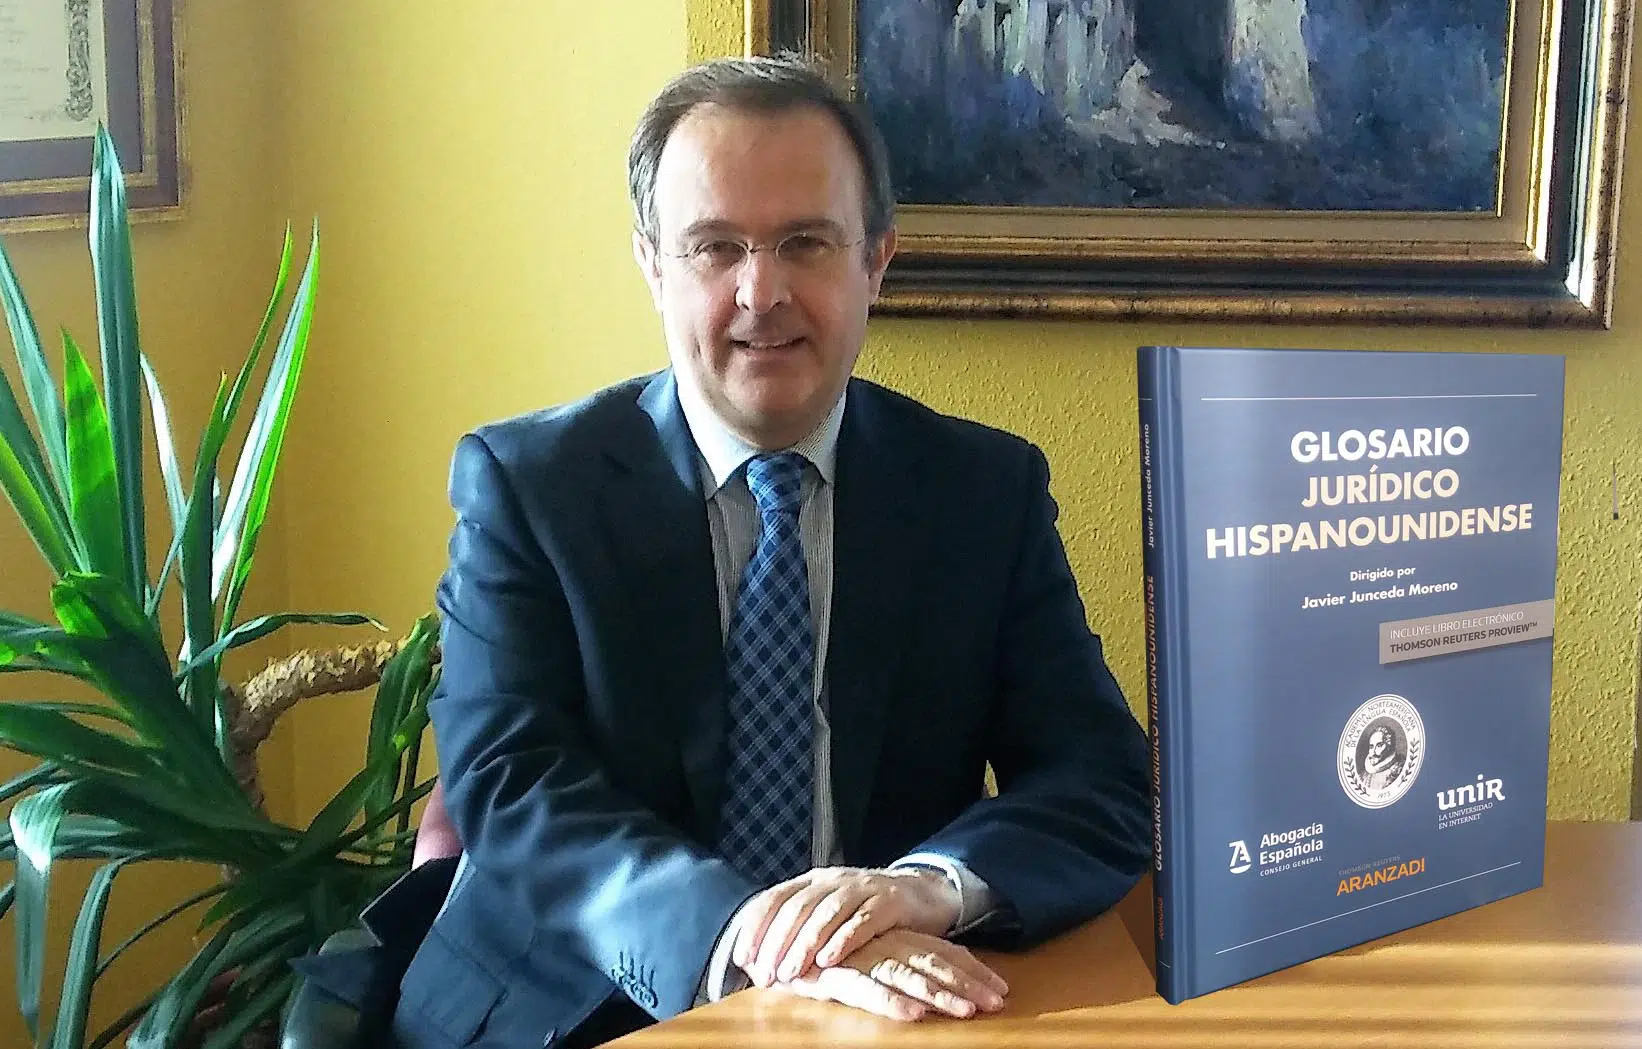 El nuevo Glosario Jurídico Hispanounidense identifica los «falsos amigos» del español en el inglés estadounidense